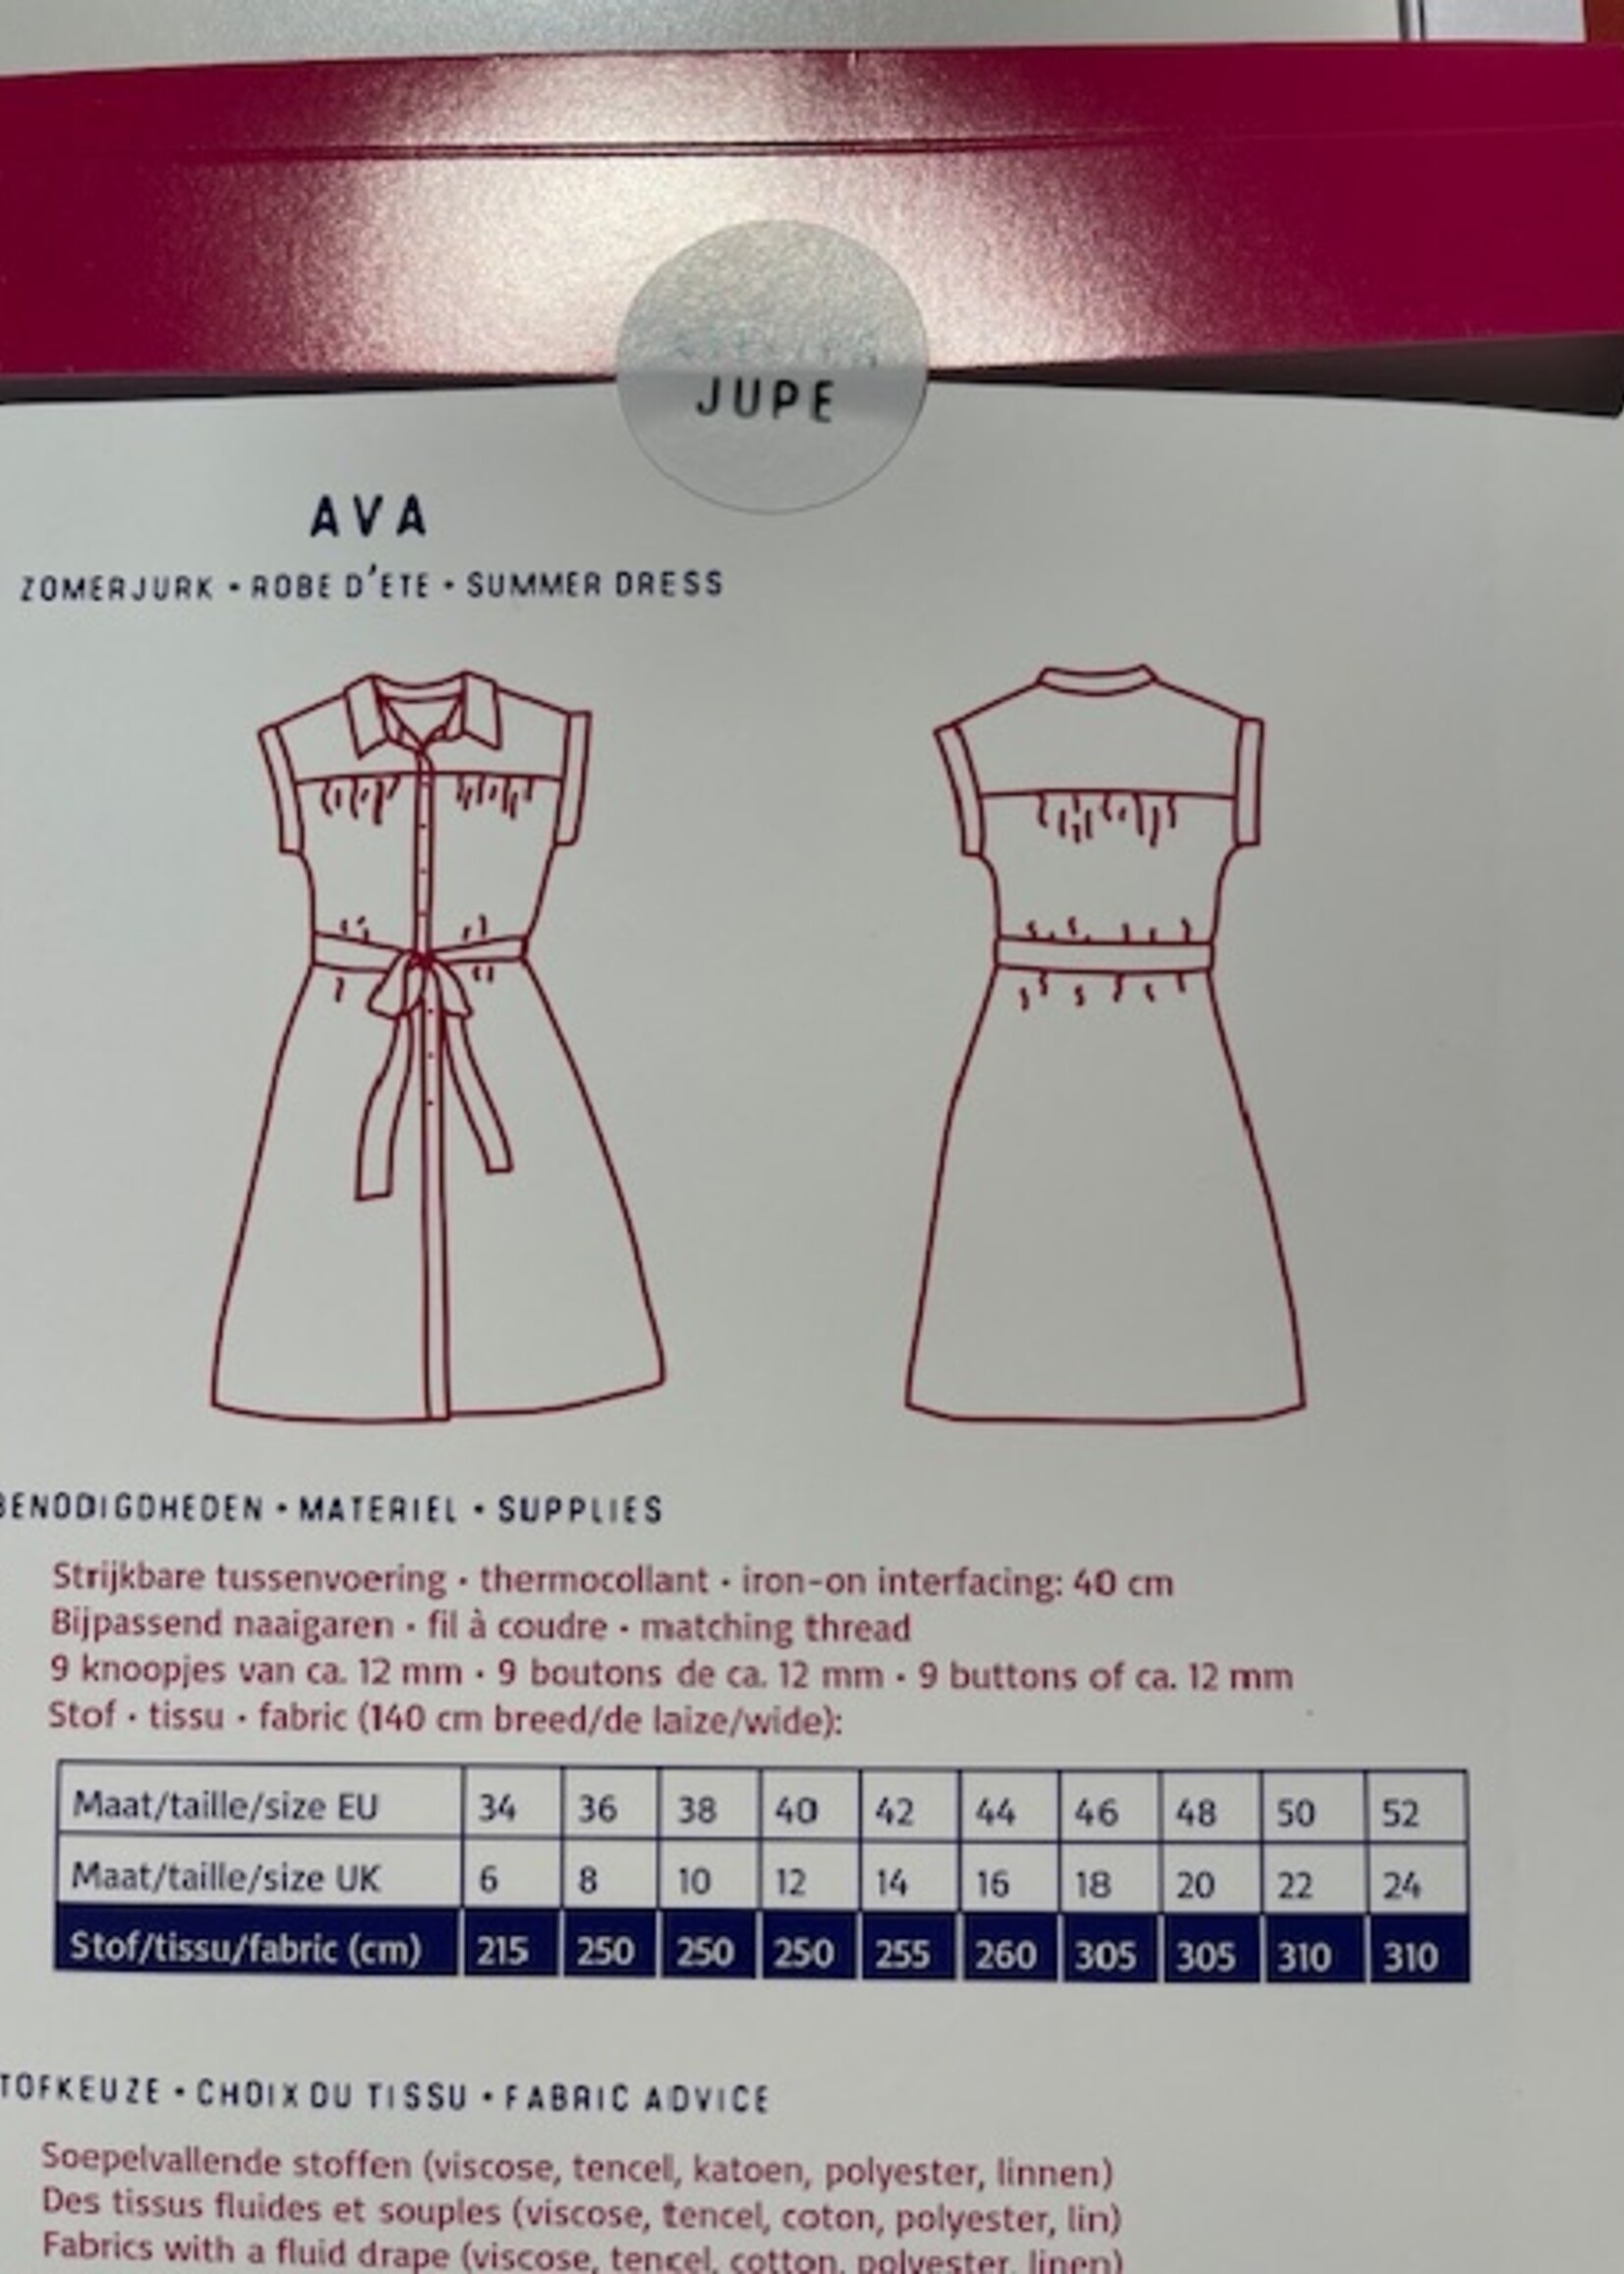 Atelier Jupe Patroon Ava jurk